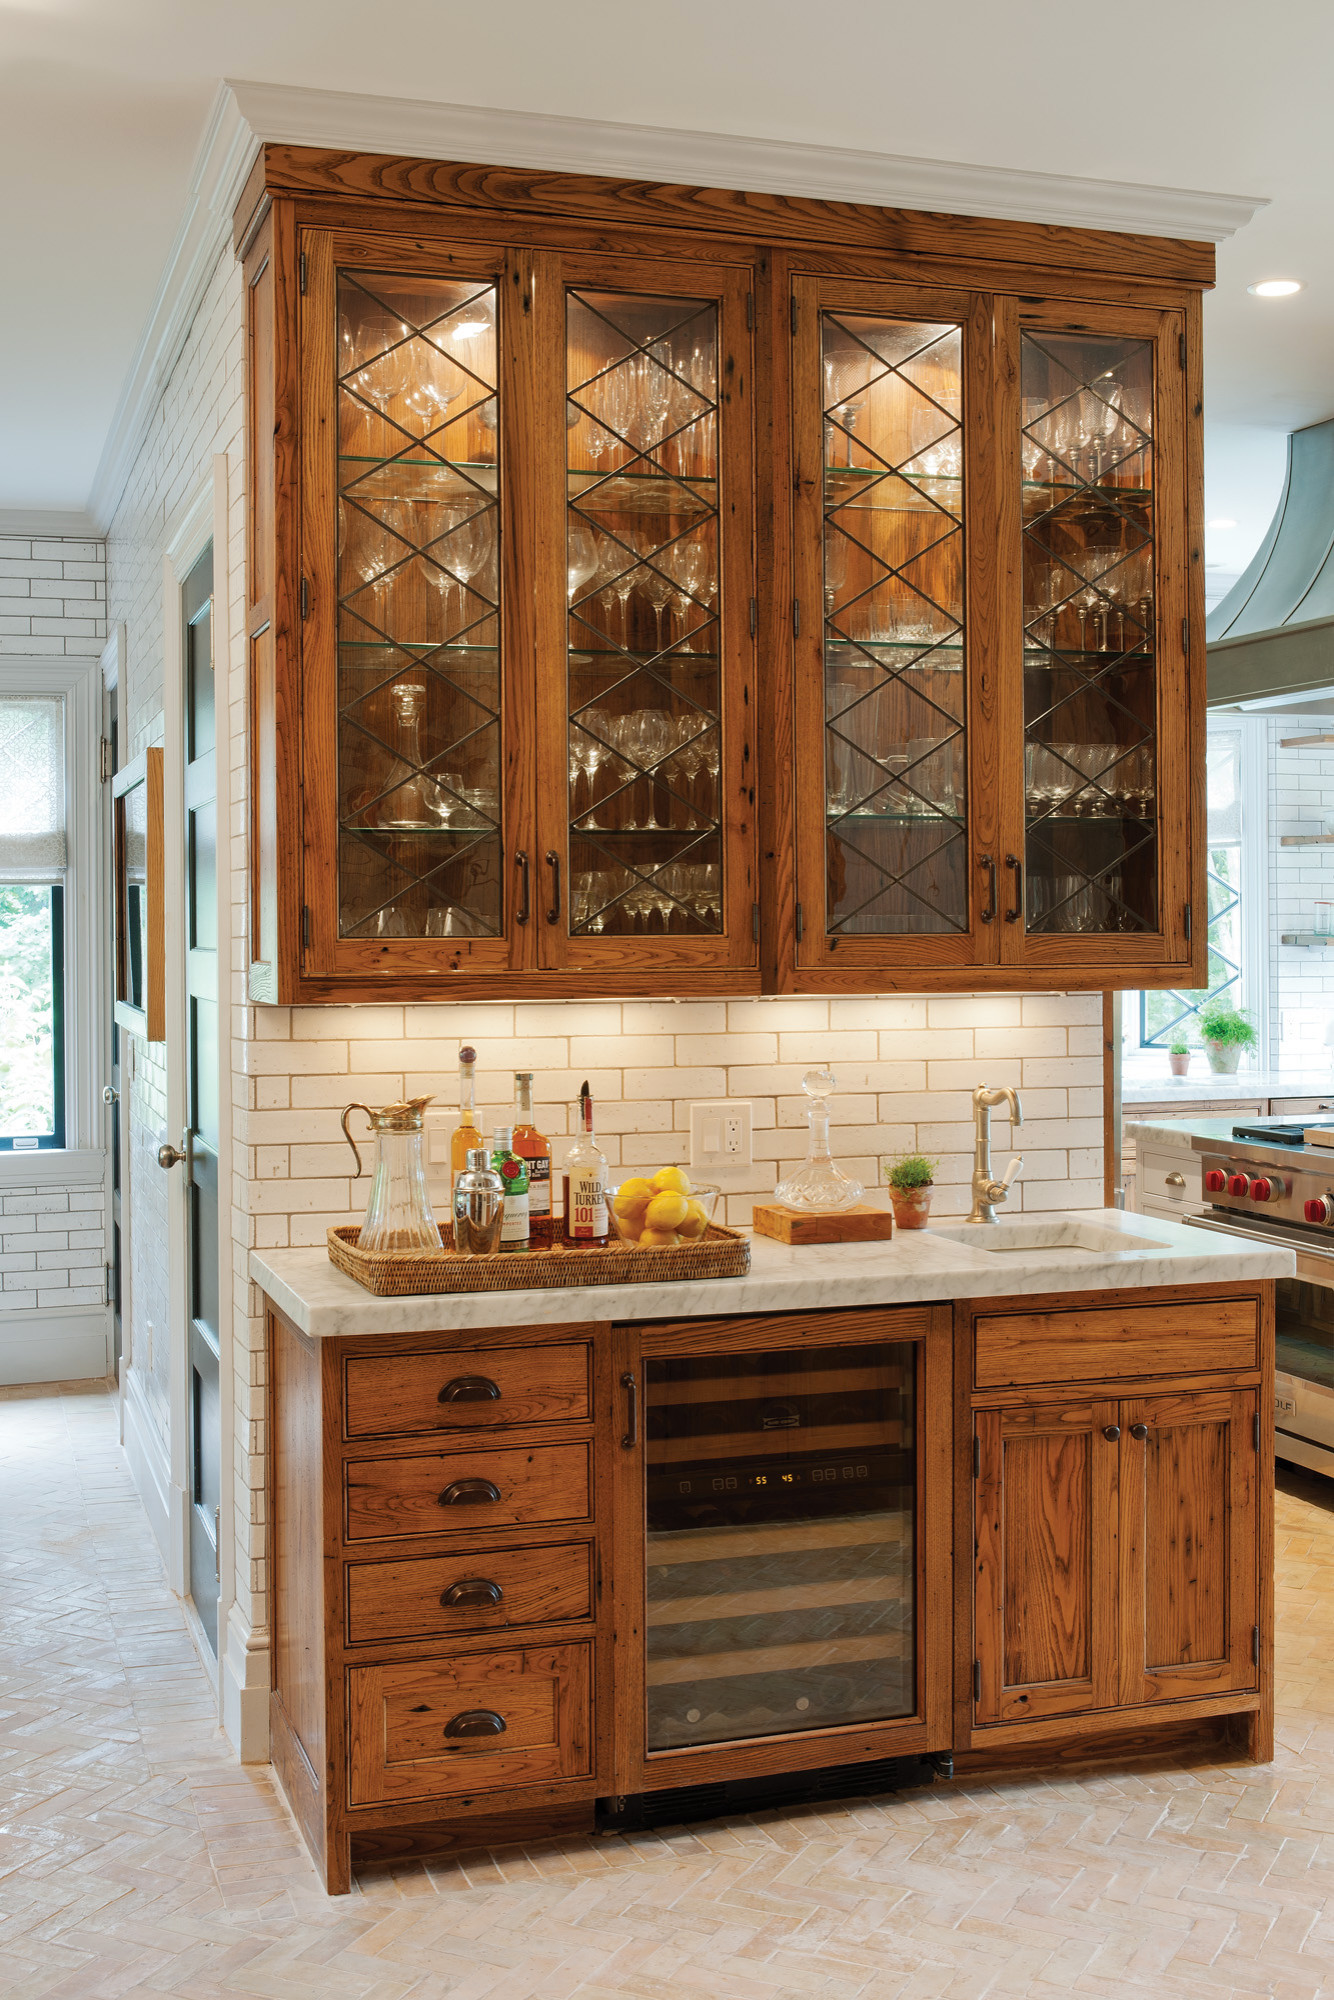 Chestnut Kitchen Cabinets - Photos & Ideas | Houzz